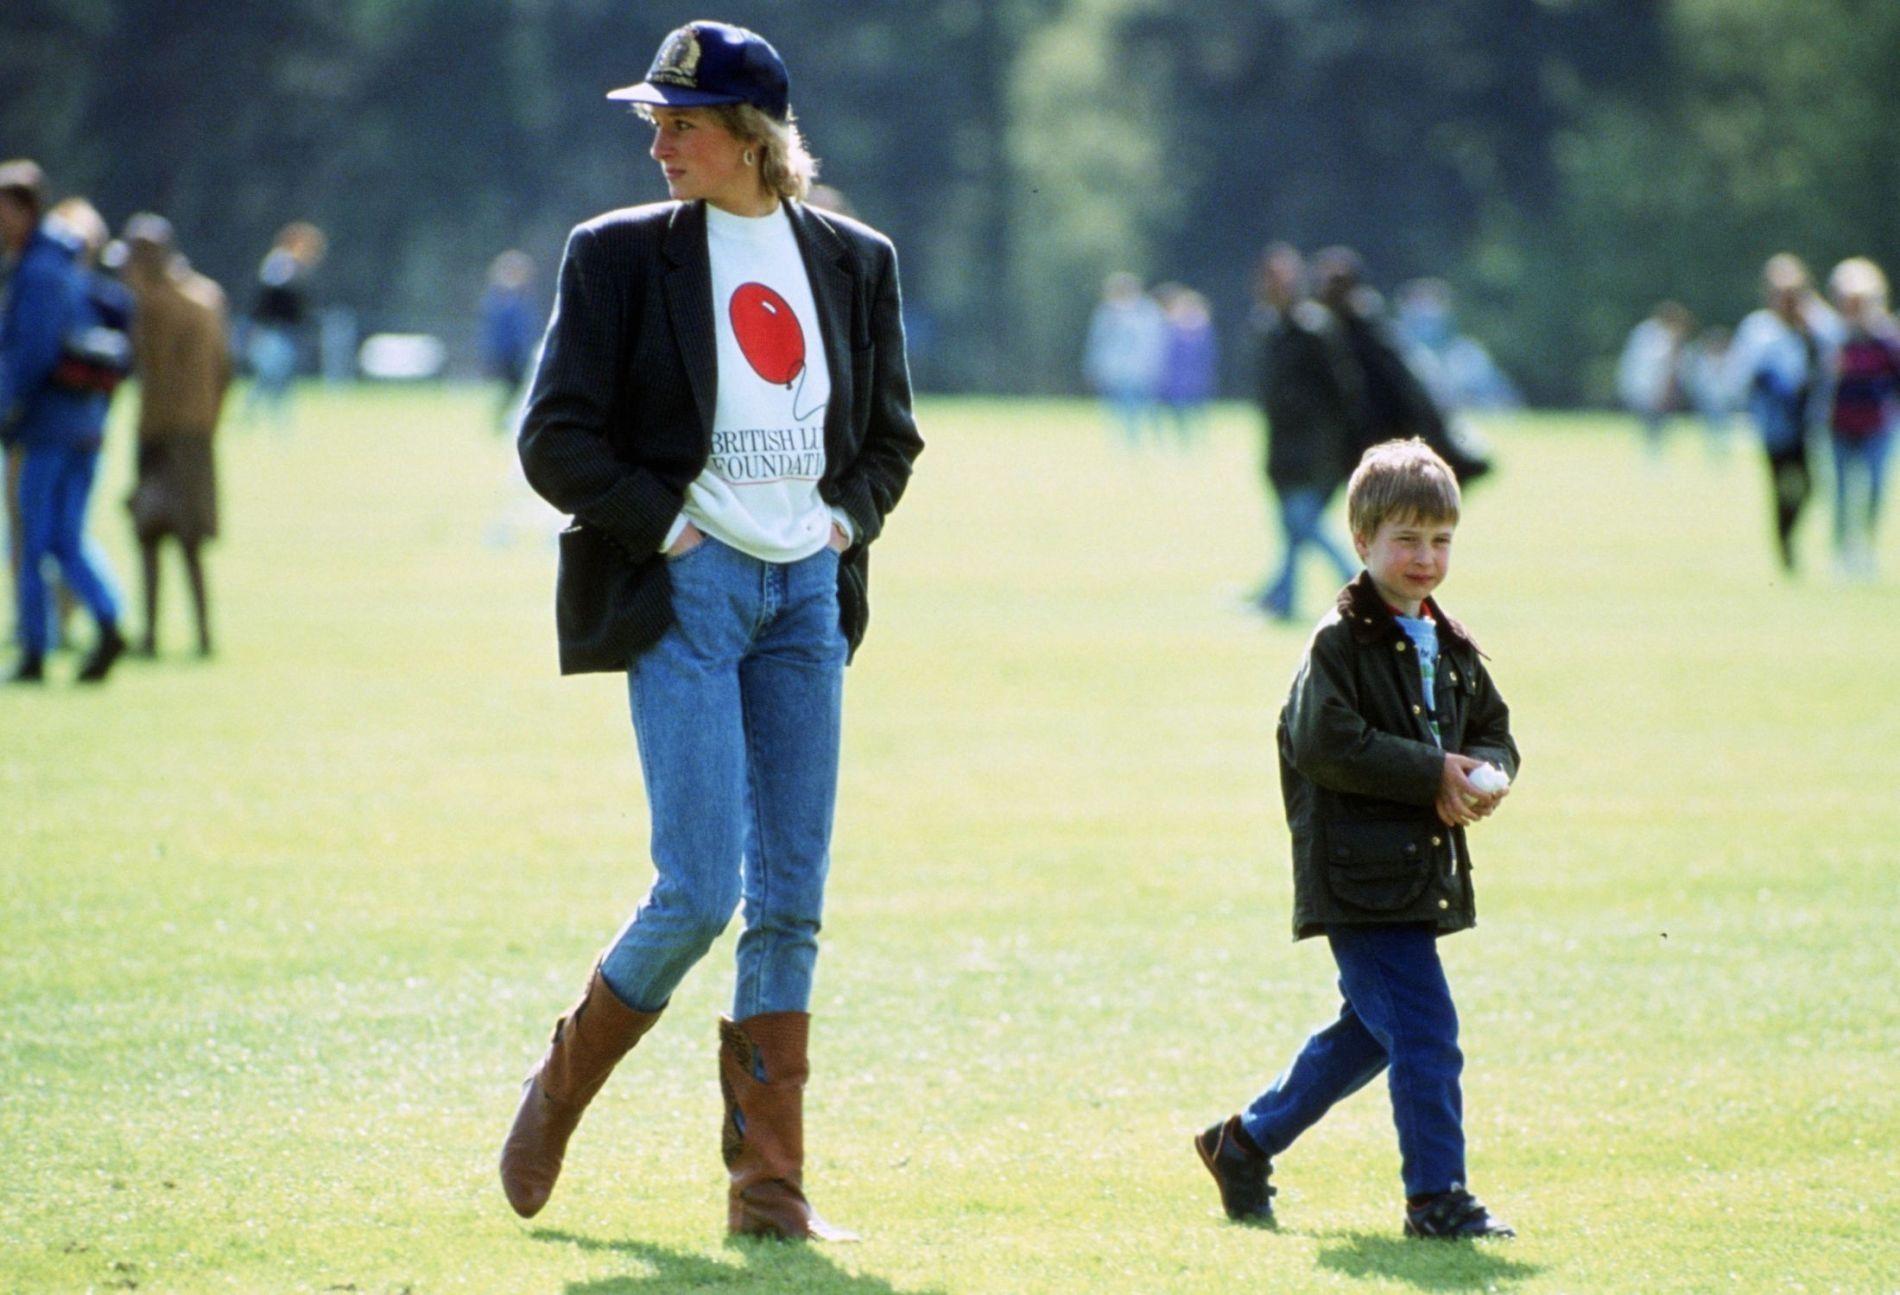 AVSLAPPET: Prinsesse Diana var kjent for sin helt spesielle motesans. Bare se hvor avslappet hun styler blazeren på polokamp med sønnen William. Foto: NTB scanpix